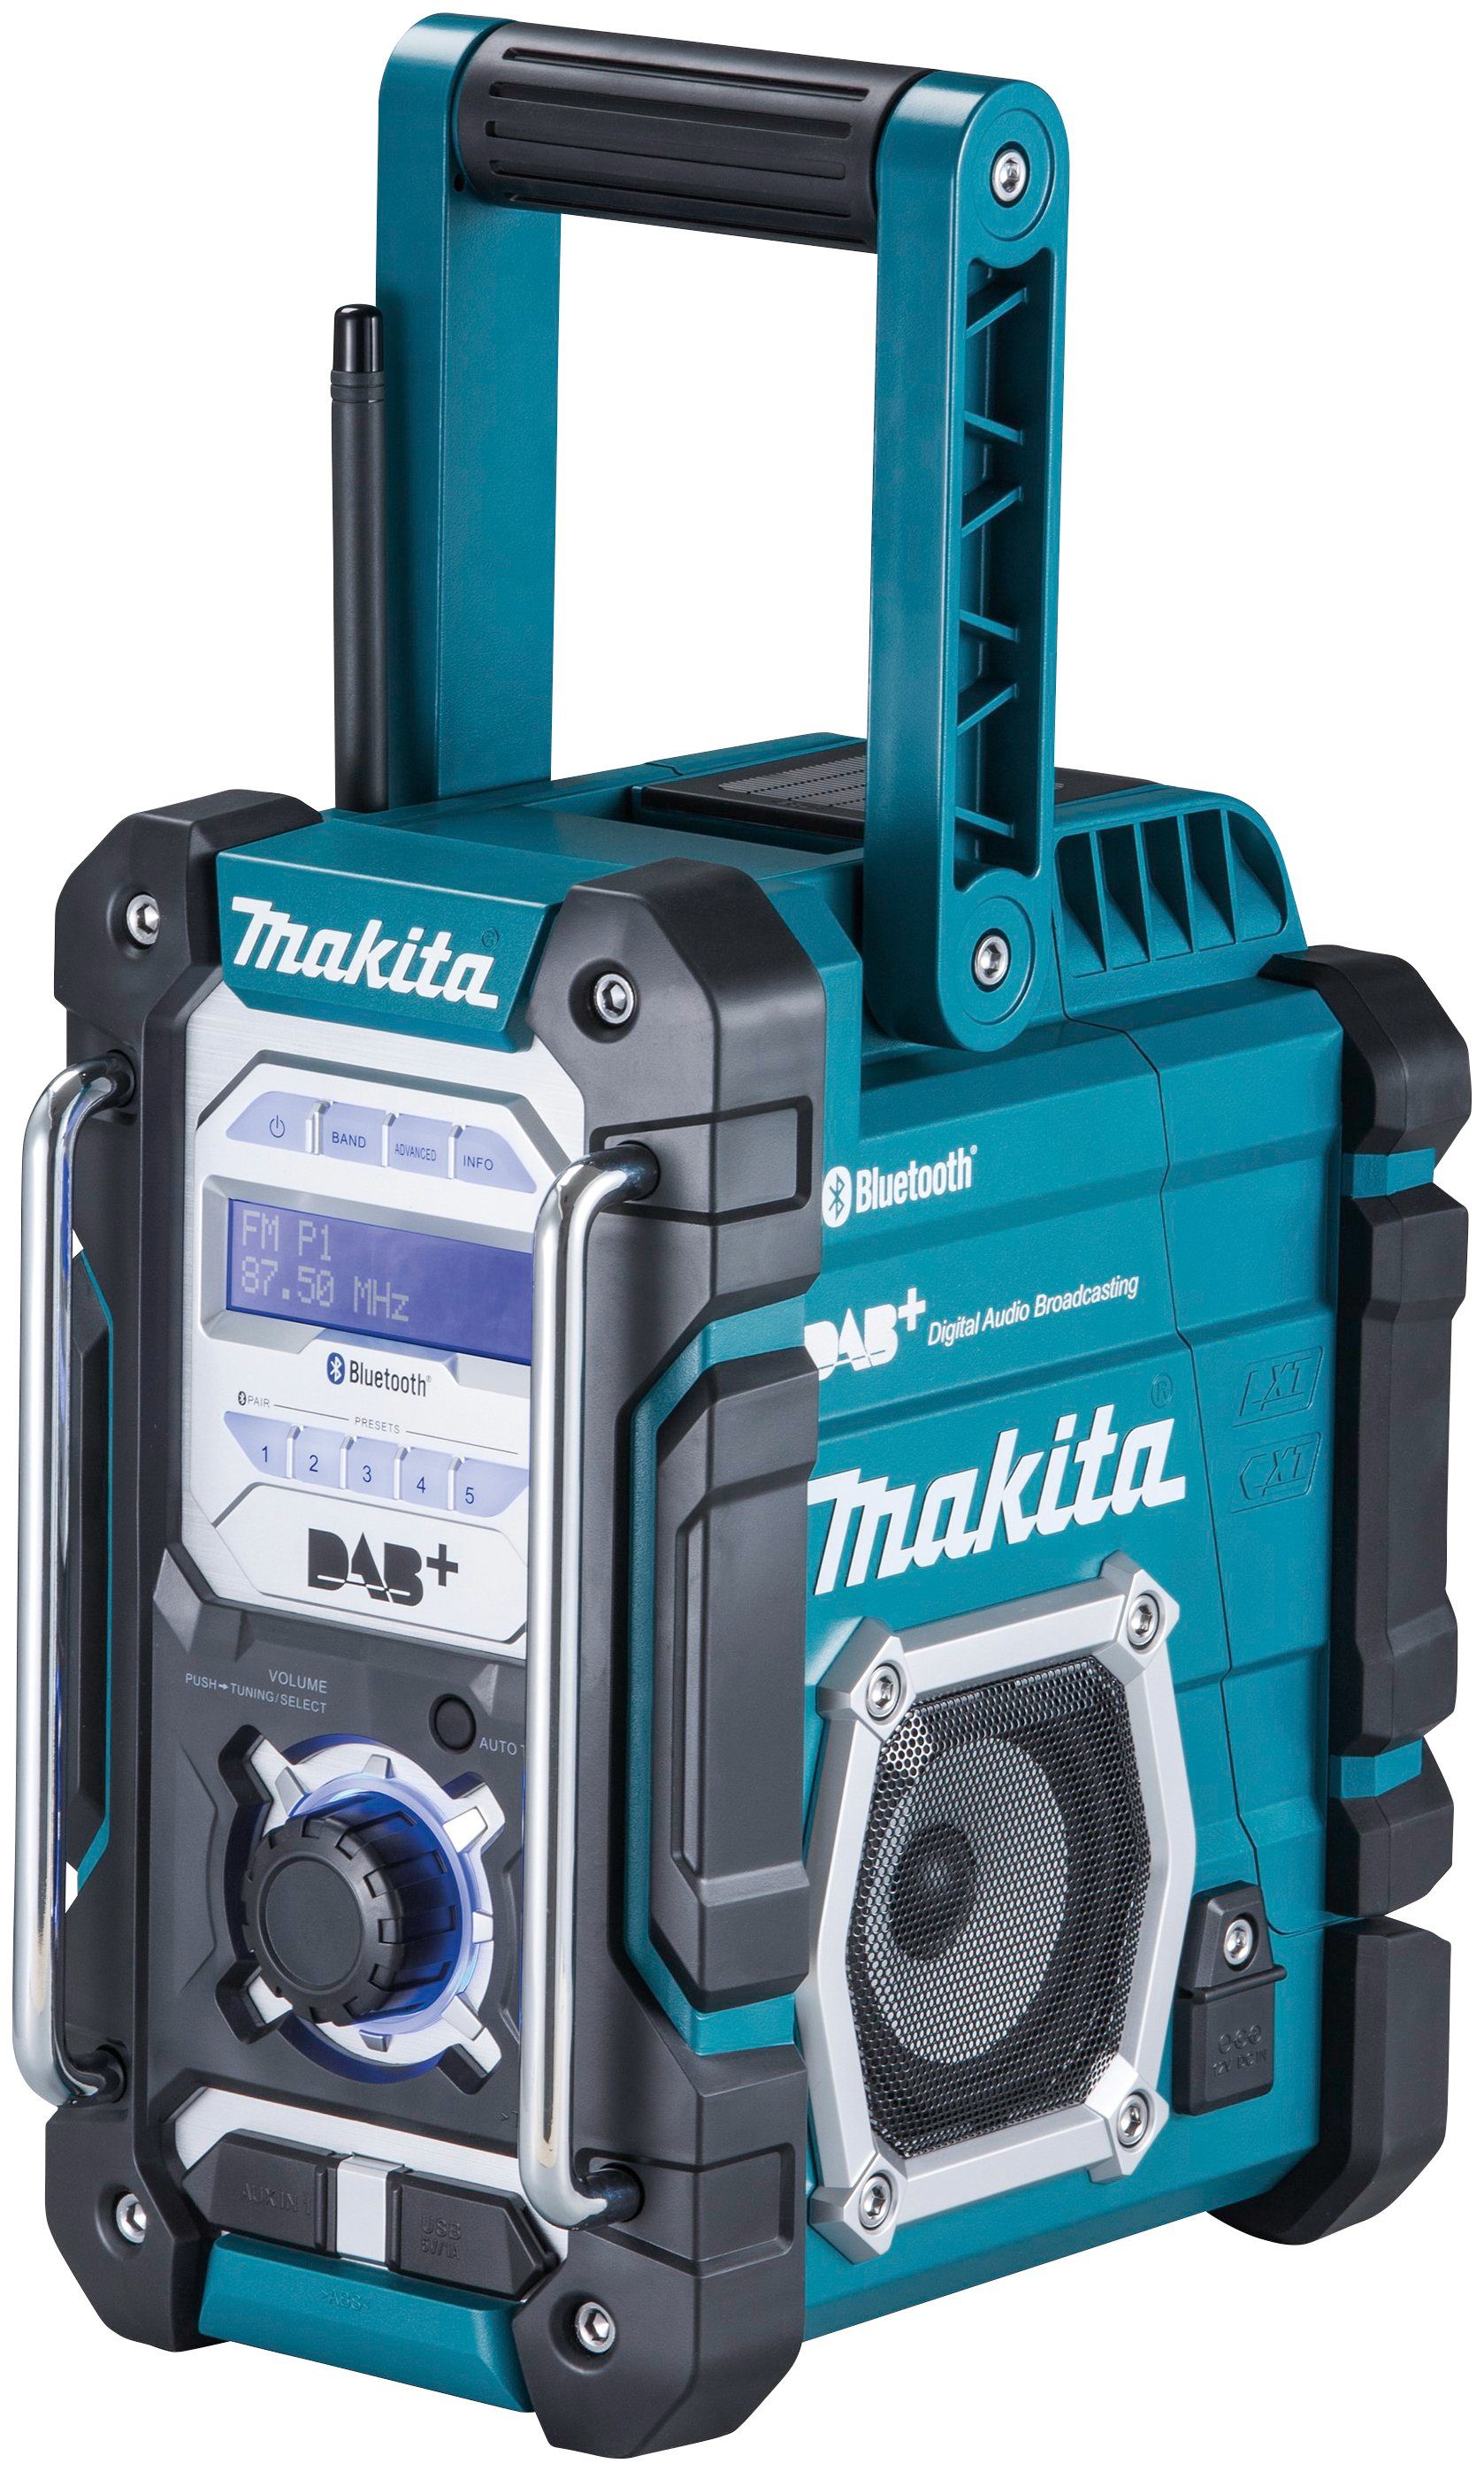 DMR112 Akku) Baustellenradio ohne (DAB), Makita FM-Tuner, (Digitalradio